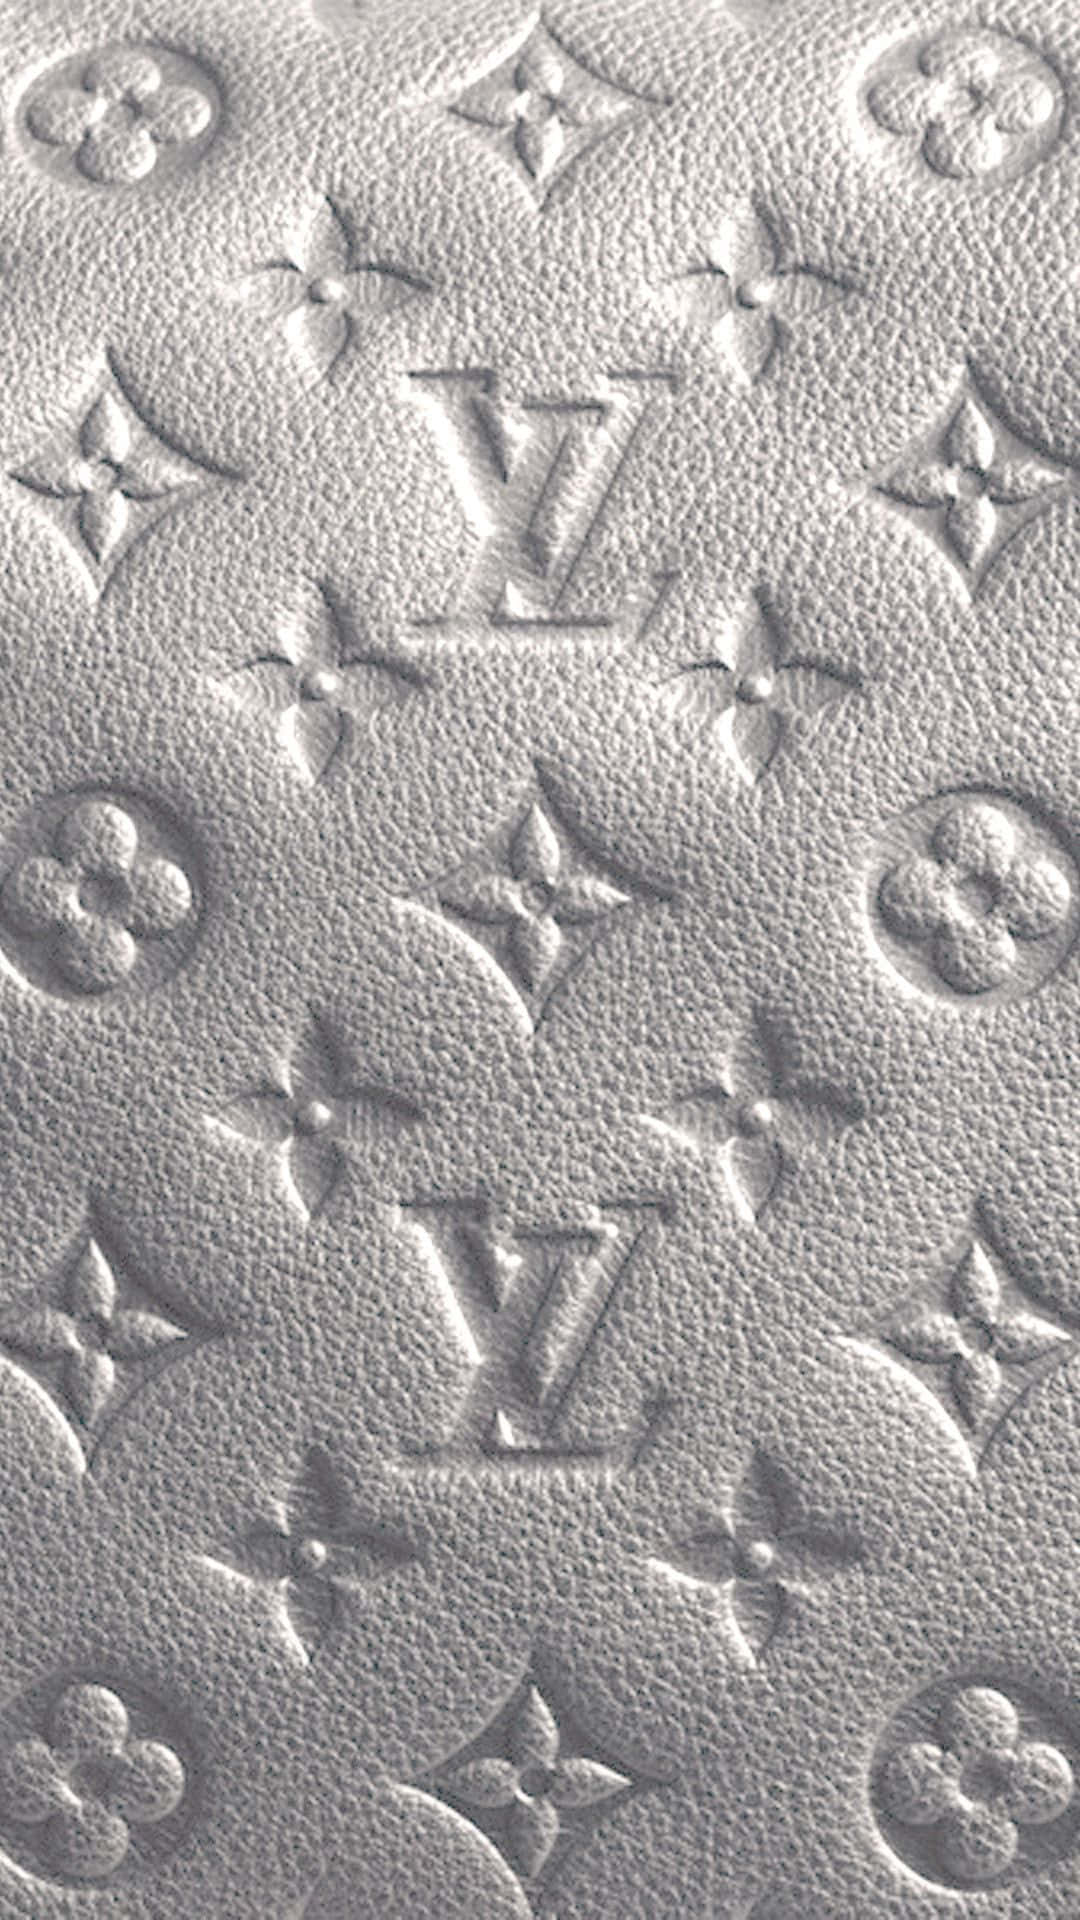 HD wallpaper: Louis Vuitton Shiny Black Logo, Louis Vuitton logo